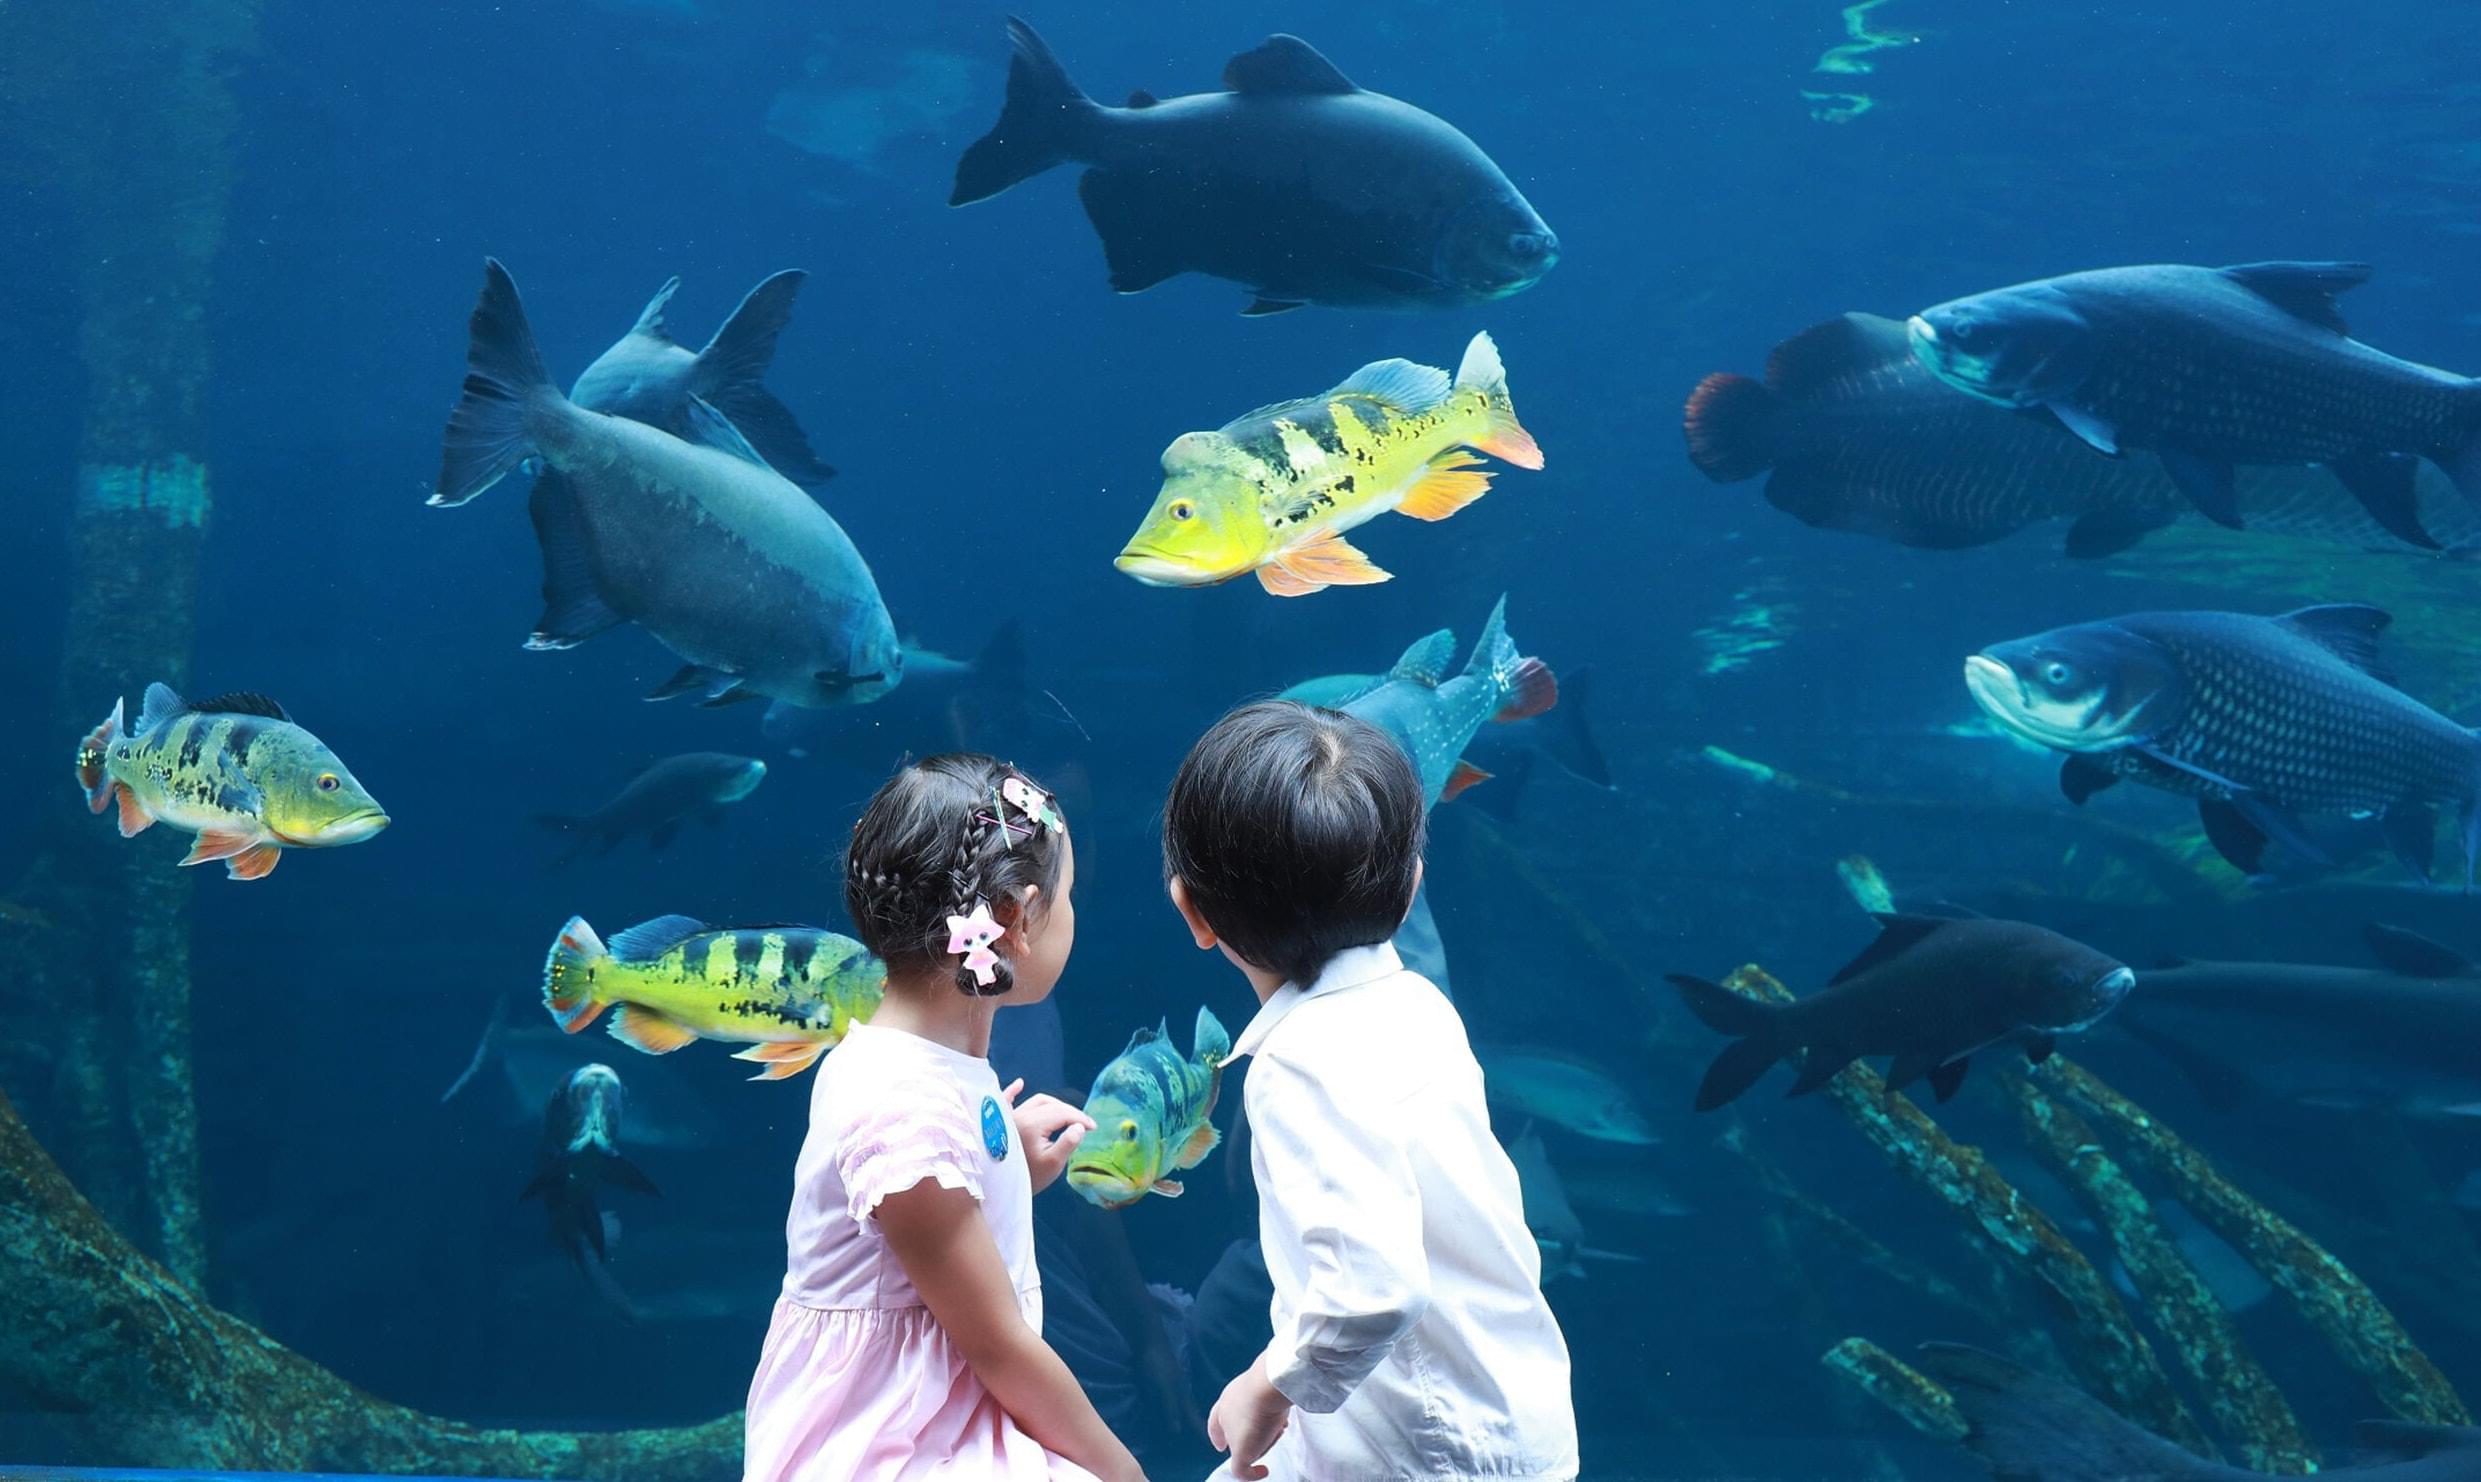 Thailand's largest aquarium - Aquaria Phuket